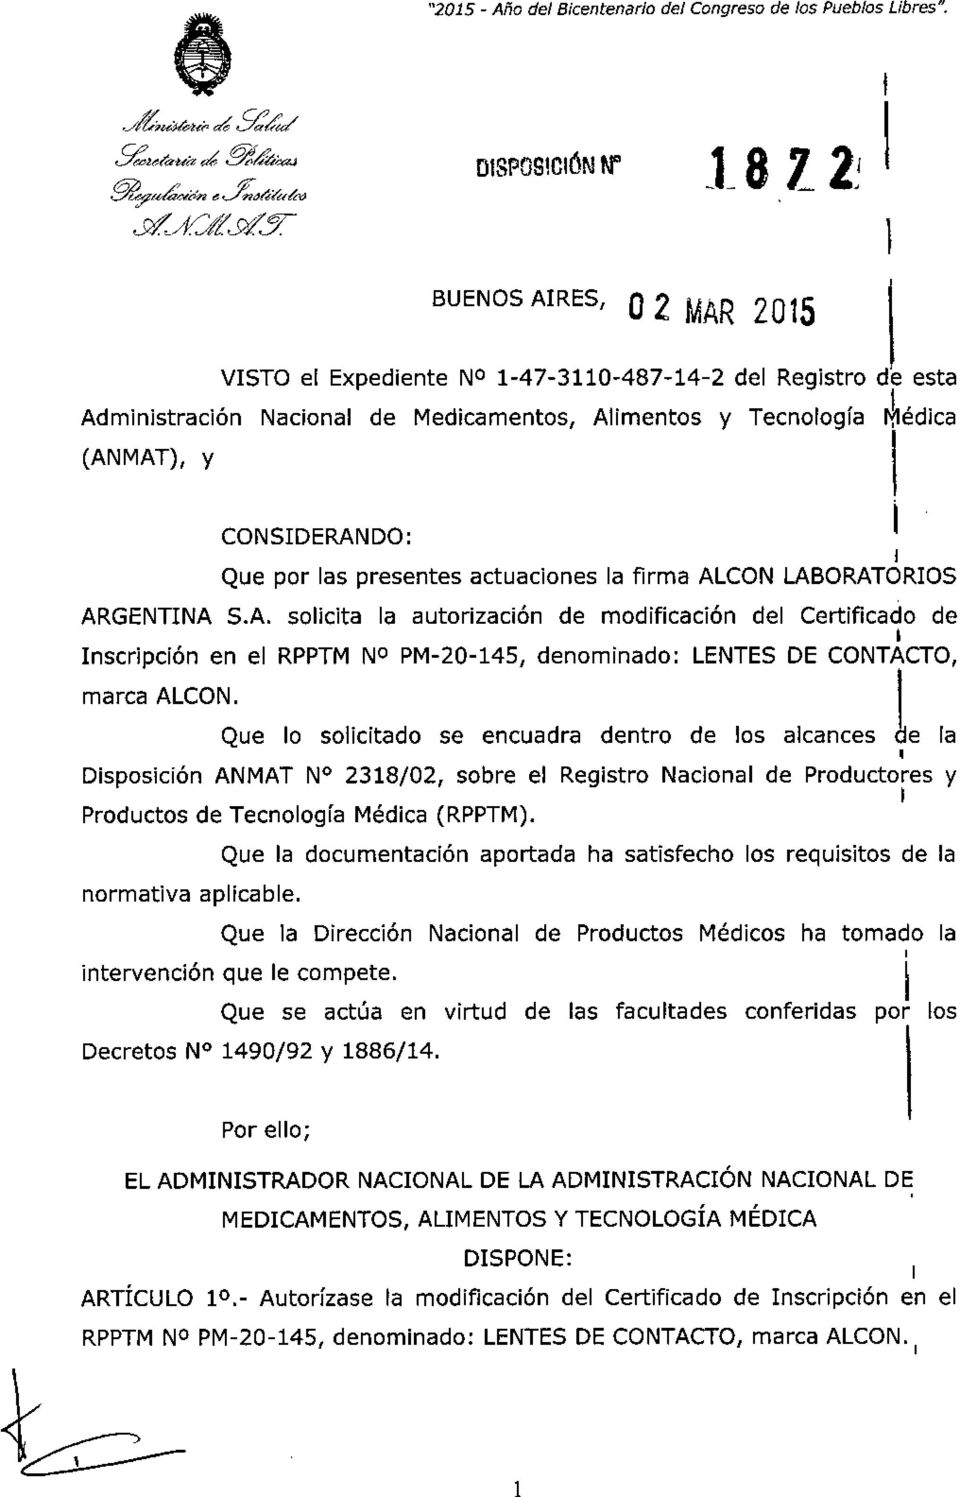 actuaciones la firma ALCON LABORATOROS ARGENTNA S.A. solicita la autorización de modificación del Certificado de nscripción en el RPPTM NO PM-20-45 denominado: LENTES DE CONTACTO marca ALCON.